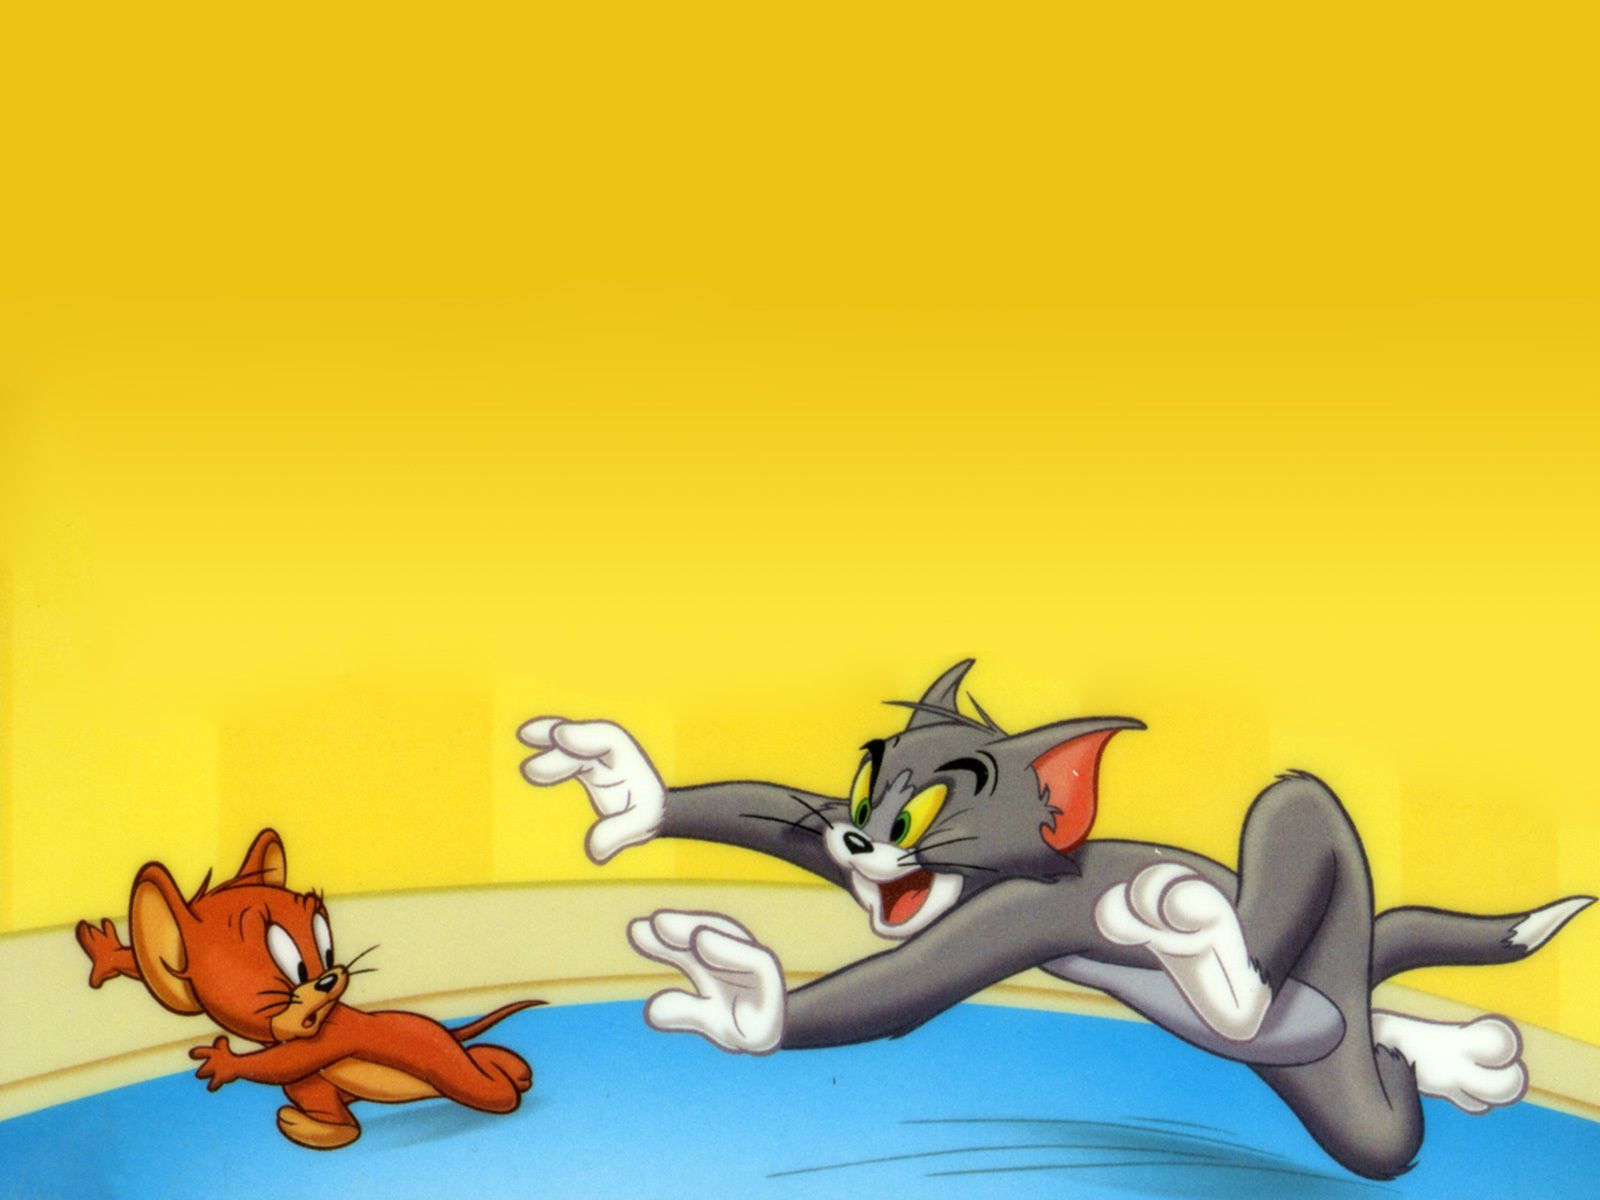 Tom and Jerry. tom and jerry and Jerry Wallpaper fanclubs. Tom and jerry picture, Tom and jerry wallpaper, Tom and jerry cartoon